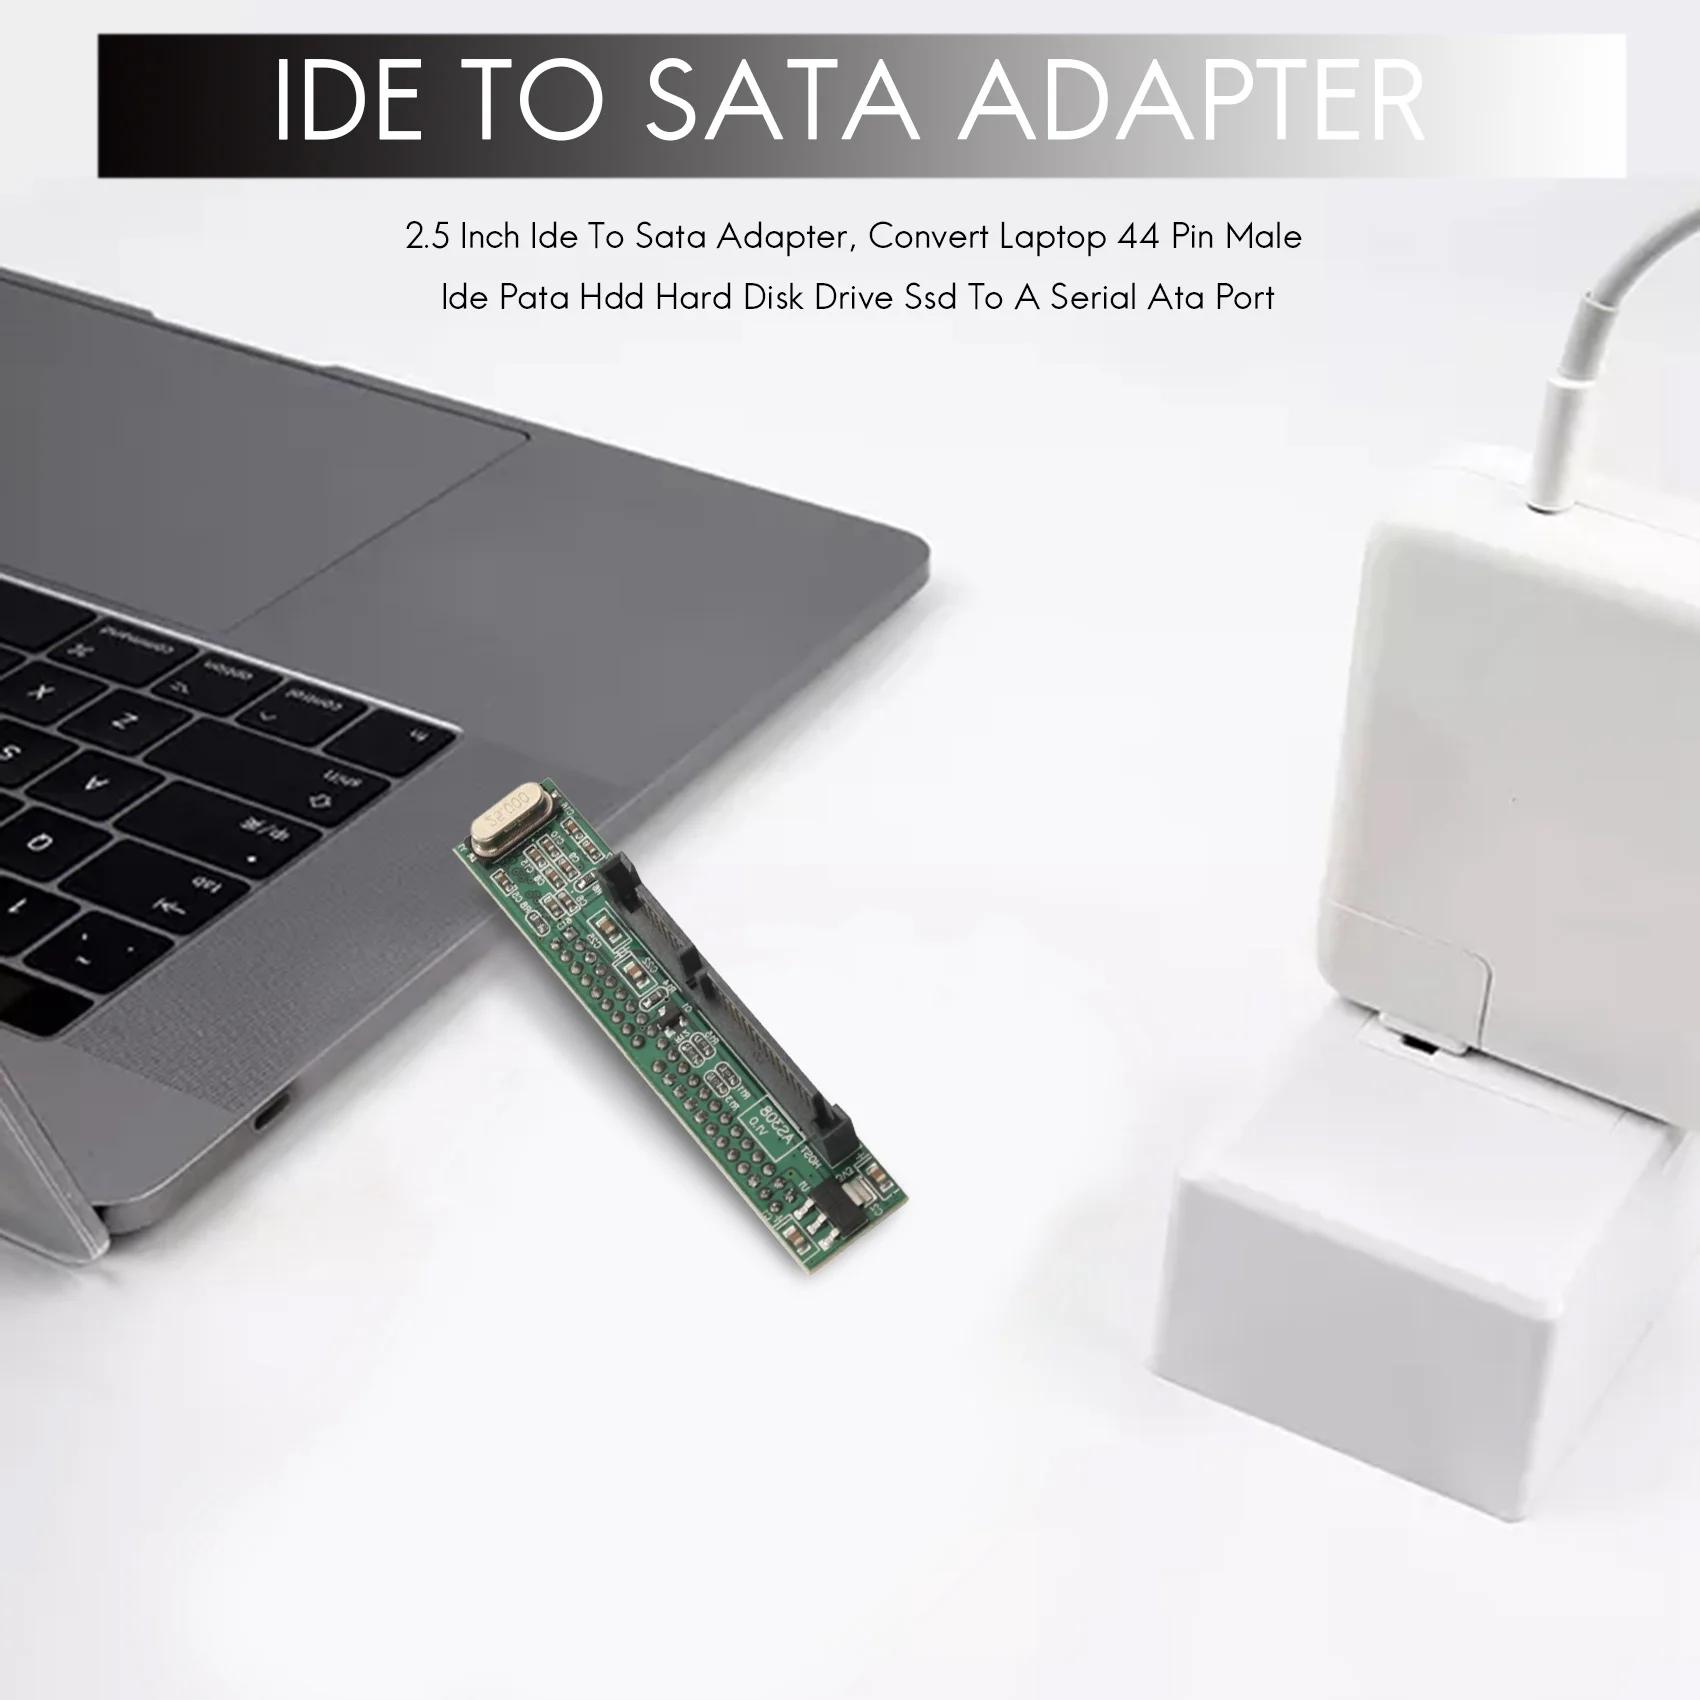 2,5-дюймовый адаптер Ide для Sata, преобразующий 44-контактный разъем для ноутбука Ide Pata Hdd для жесткого диска Ssd в порт Serial Ata - 2